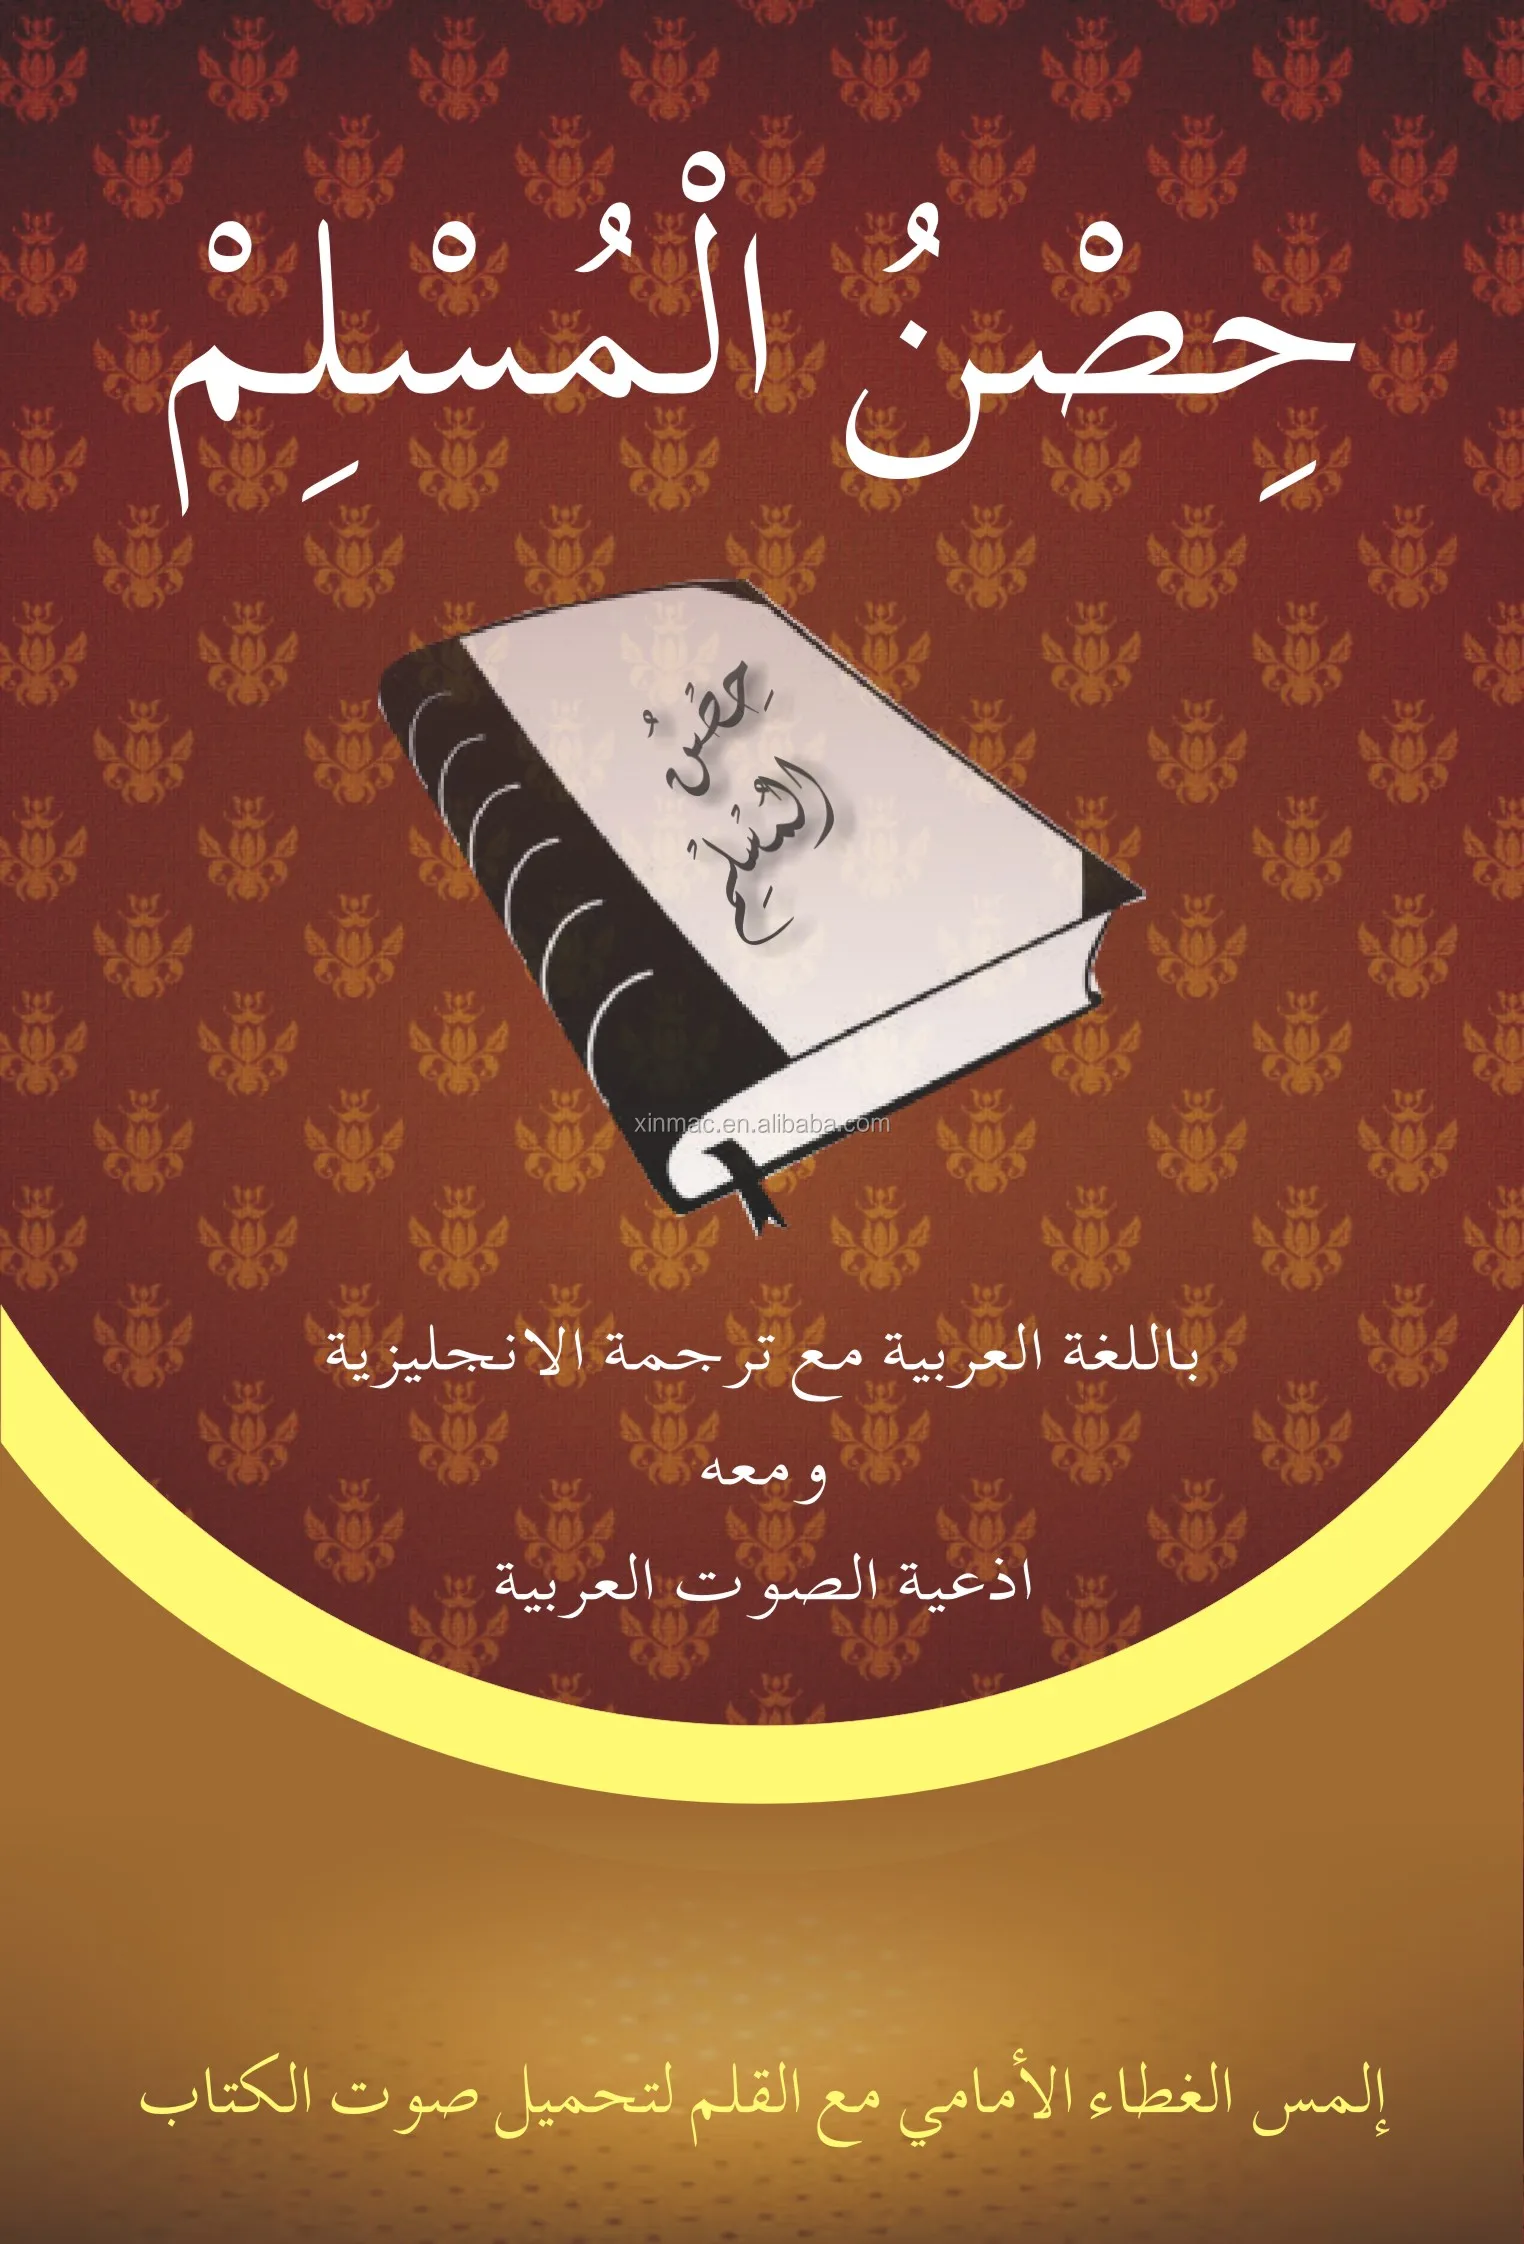 sheikh mishary rashid alafasy full quran mp3 free download